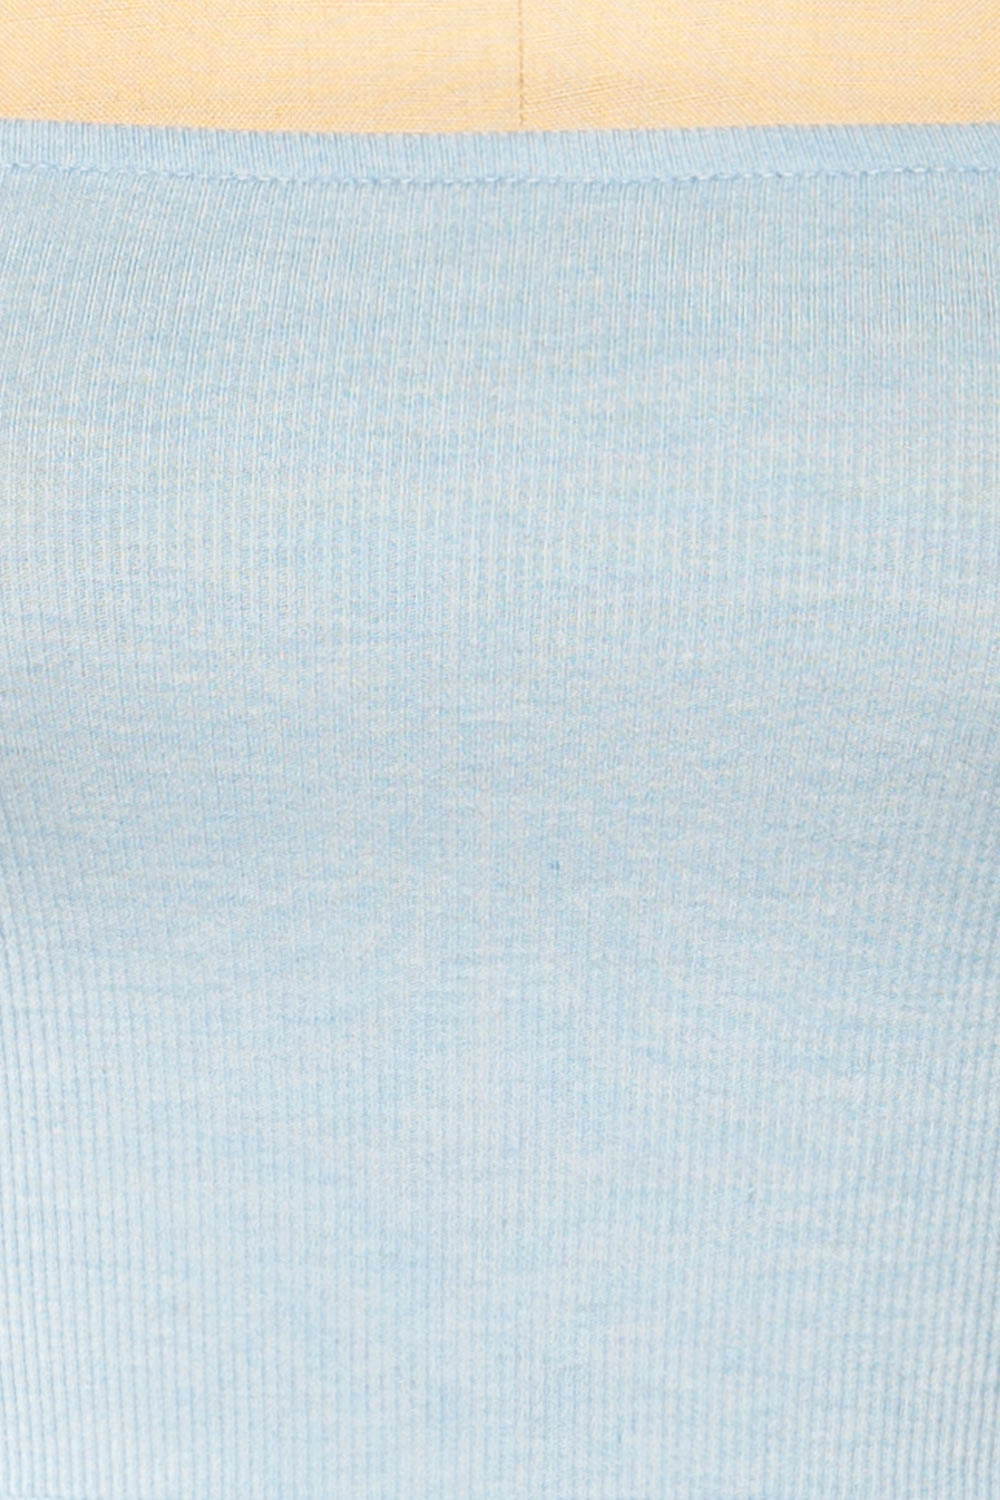 Rimini Blue Cropped Ribbed Cami | La petite garçonne fabric 